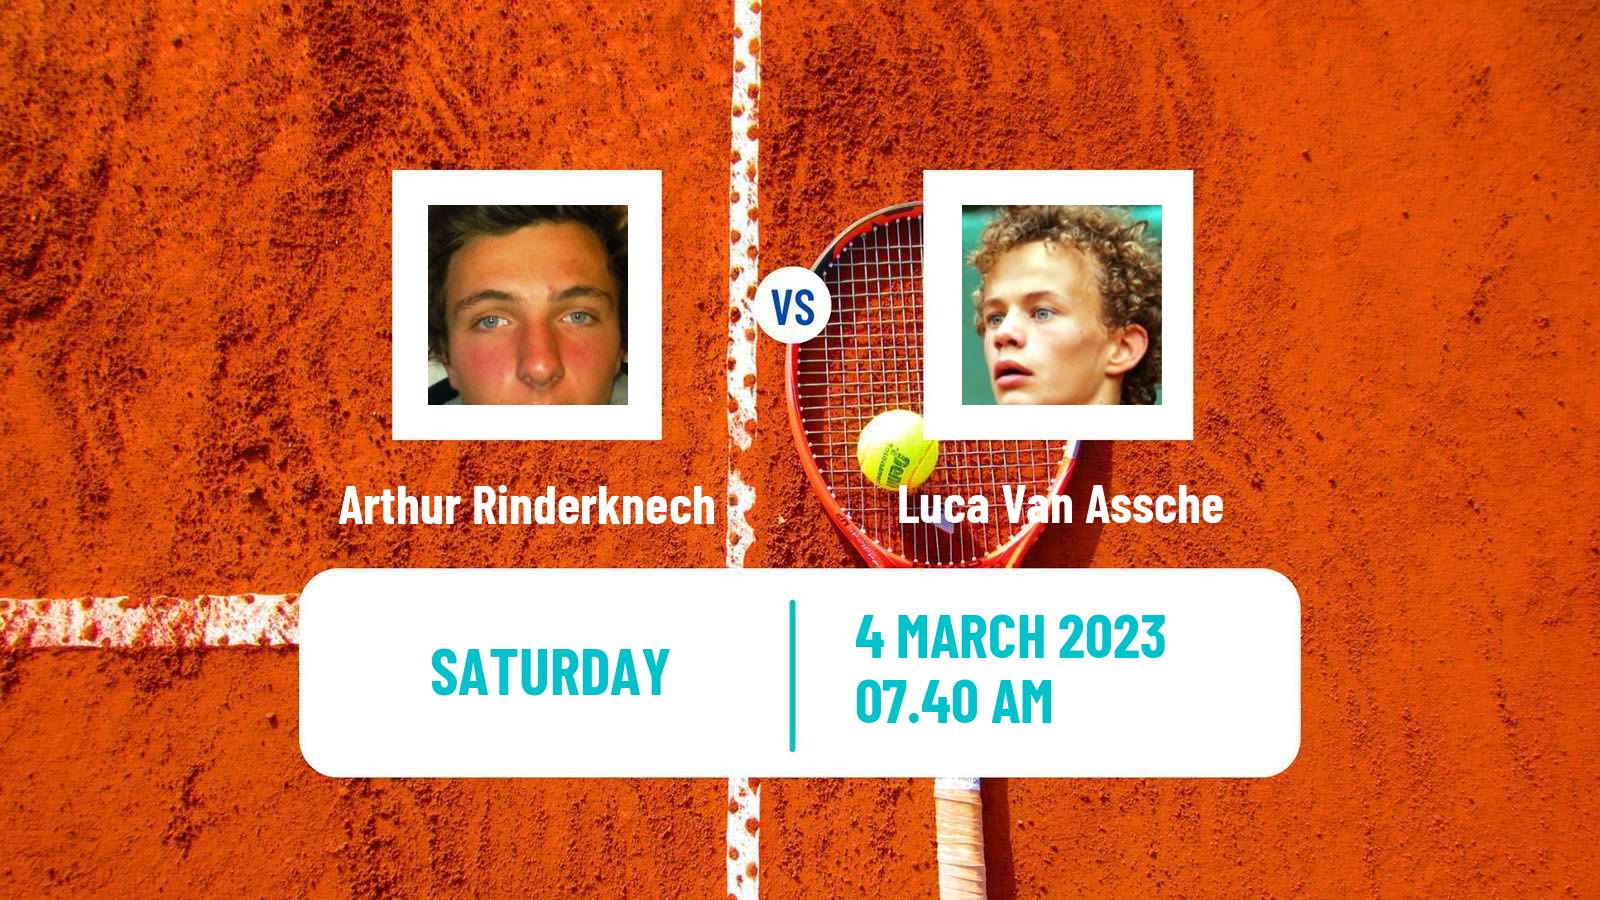 Tennis ATP Challenger Arthur Rinderknech - Luca Van Assche